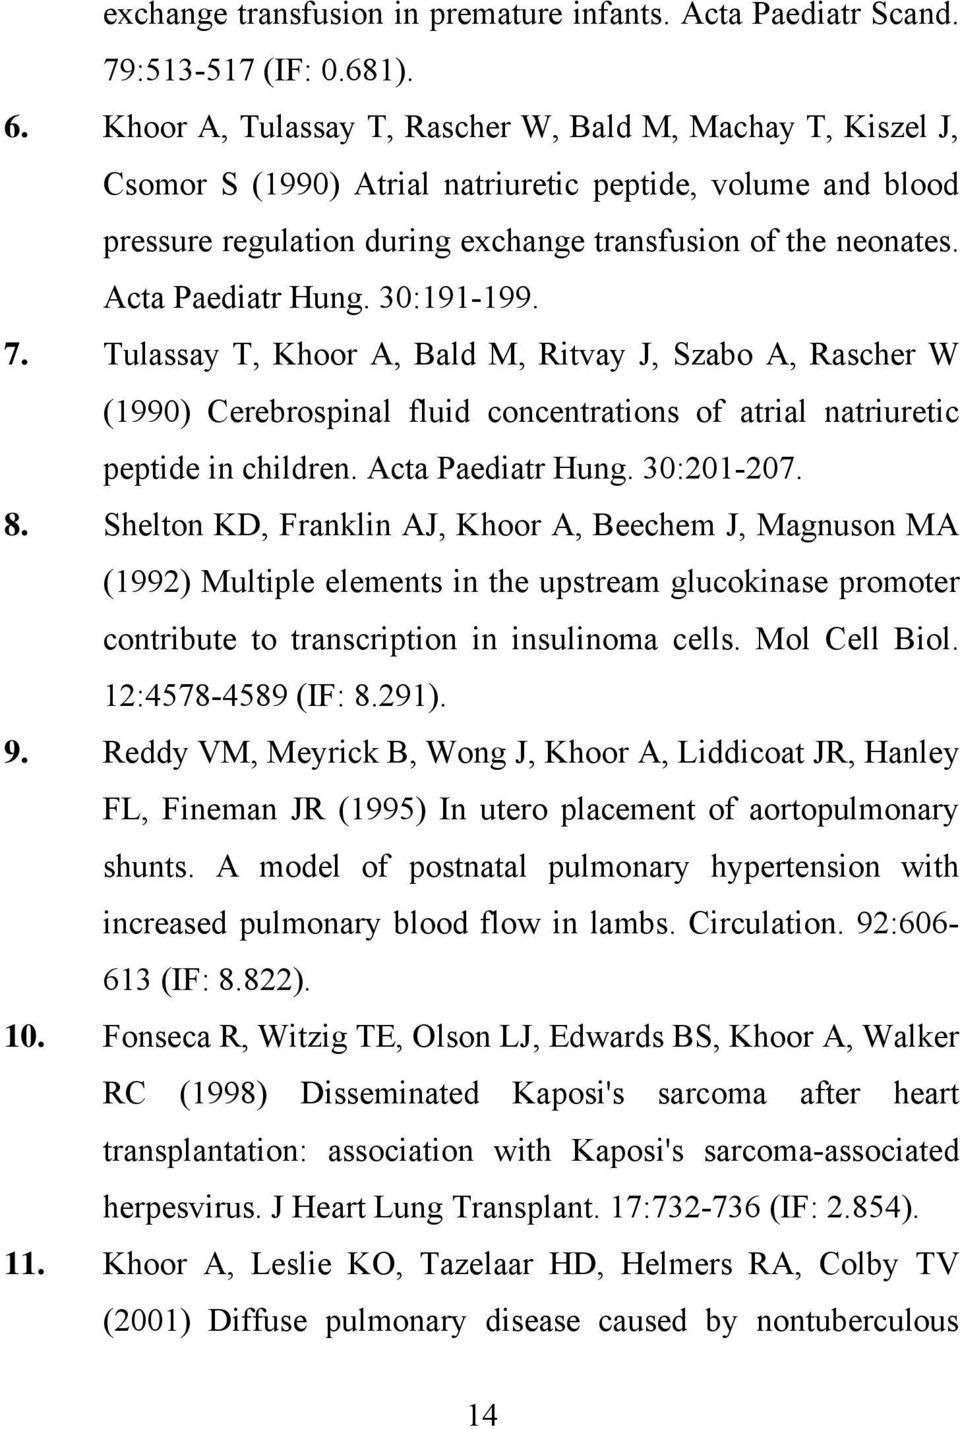 Acta Paediatr Hung. 30:191-199. 7. Tulassay T, Khoor A, Bald M, Ritvay J, Szabo A, Rascher W (1990) Cerebrospinal fluid concentrations of atrial natriuretic peptide in children. Acta Paediatr Hung.